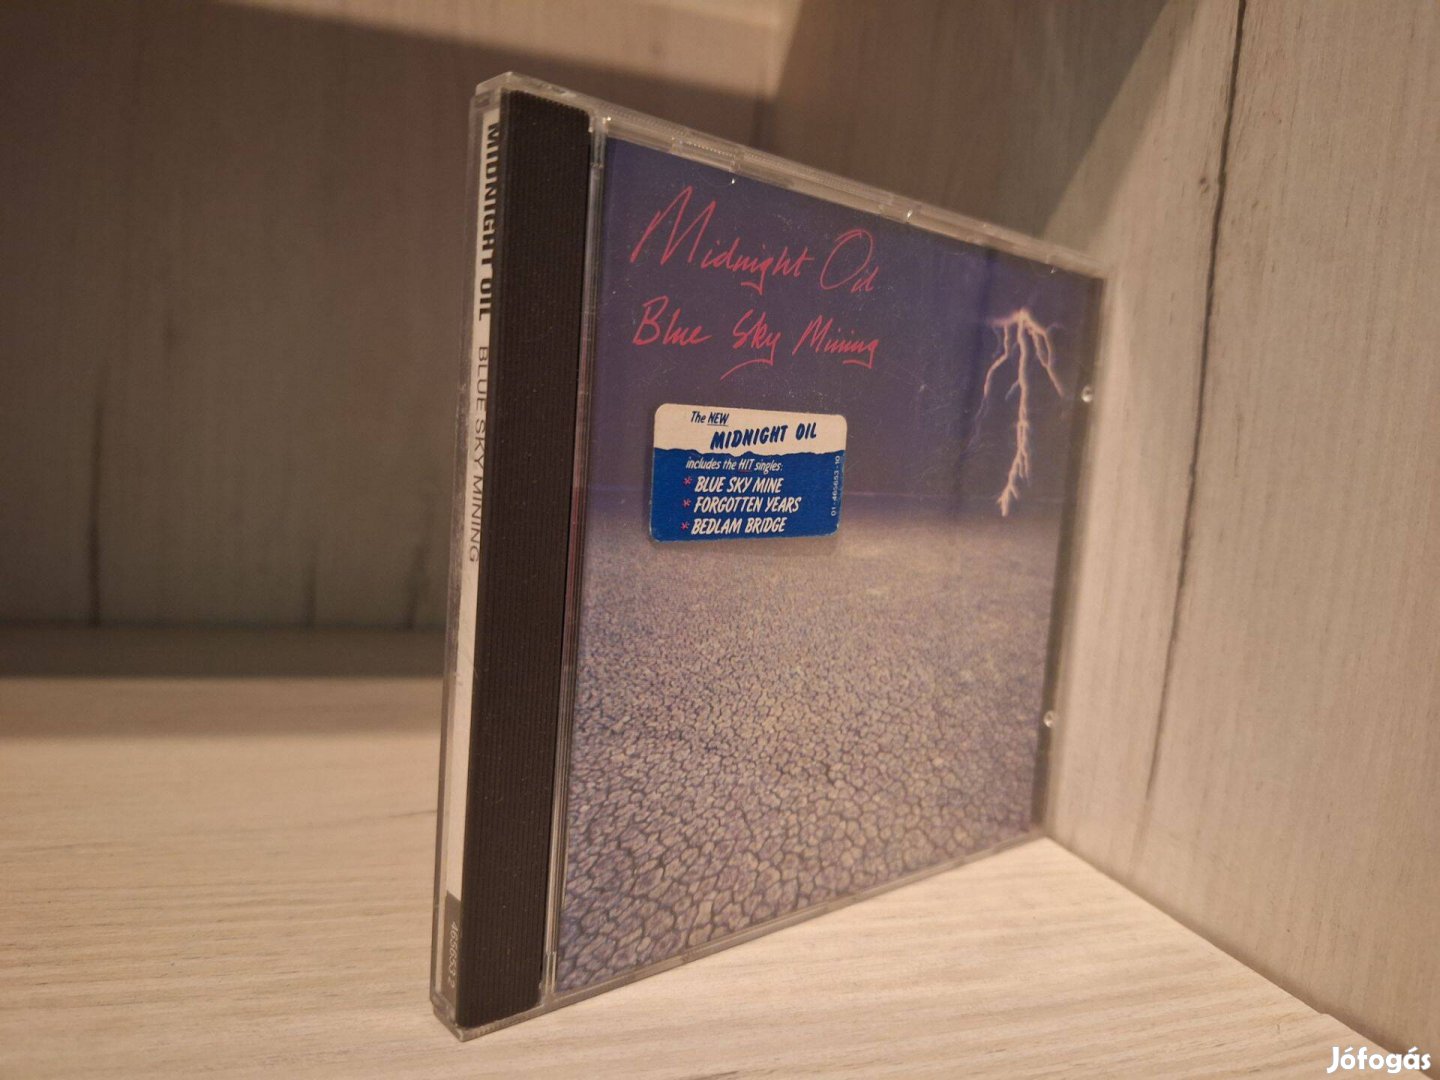 Midnight Oil - Blue Sky Mining CD